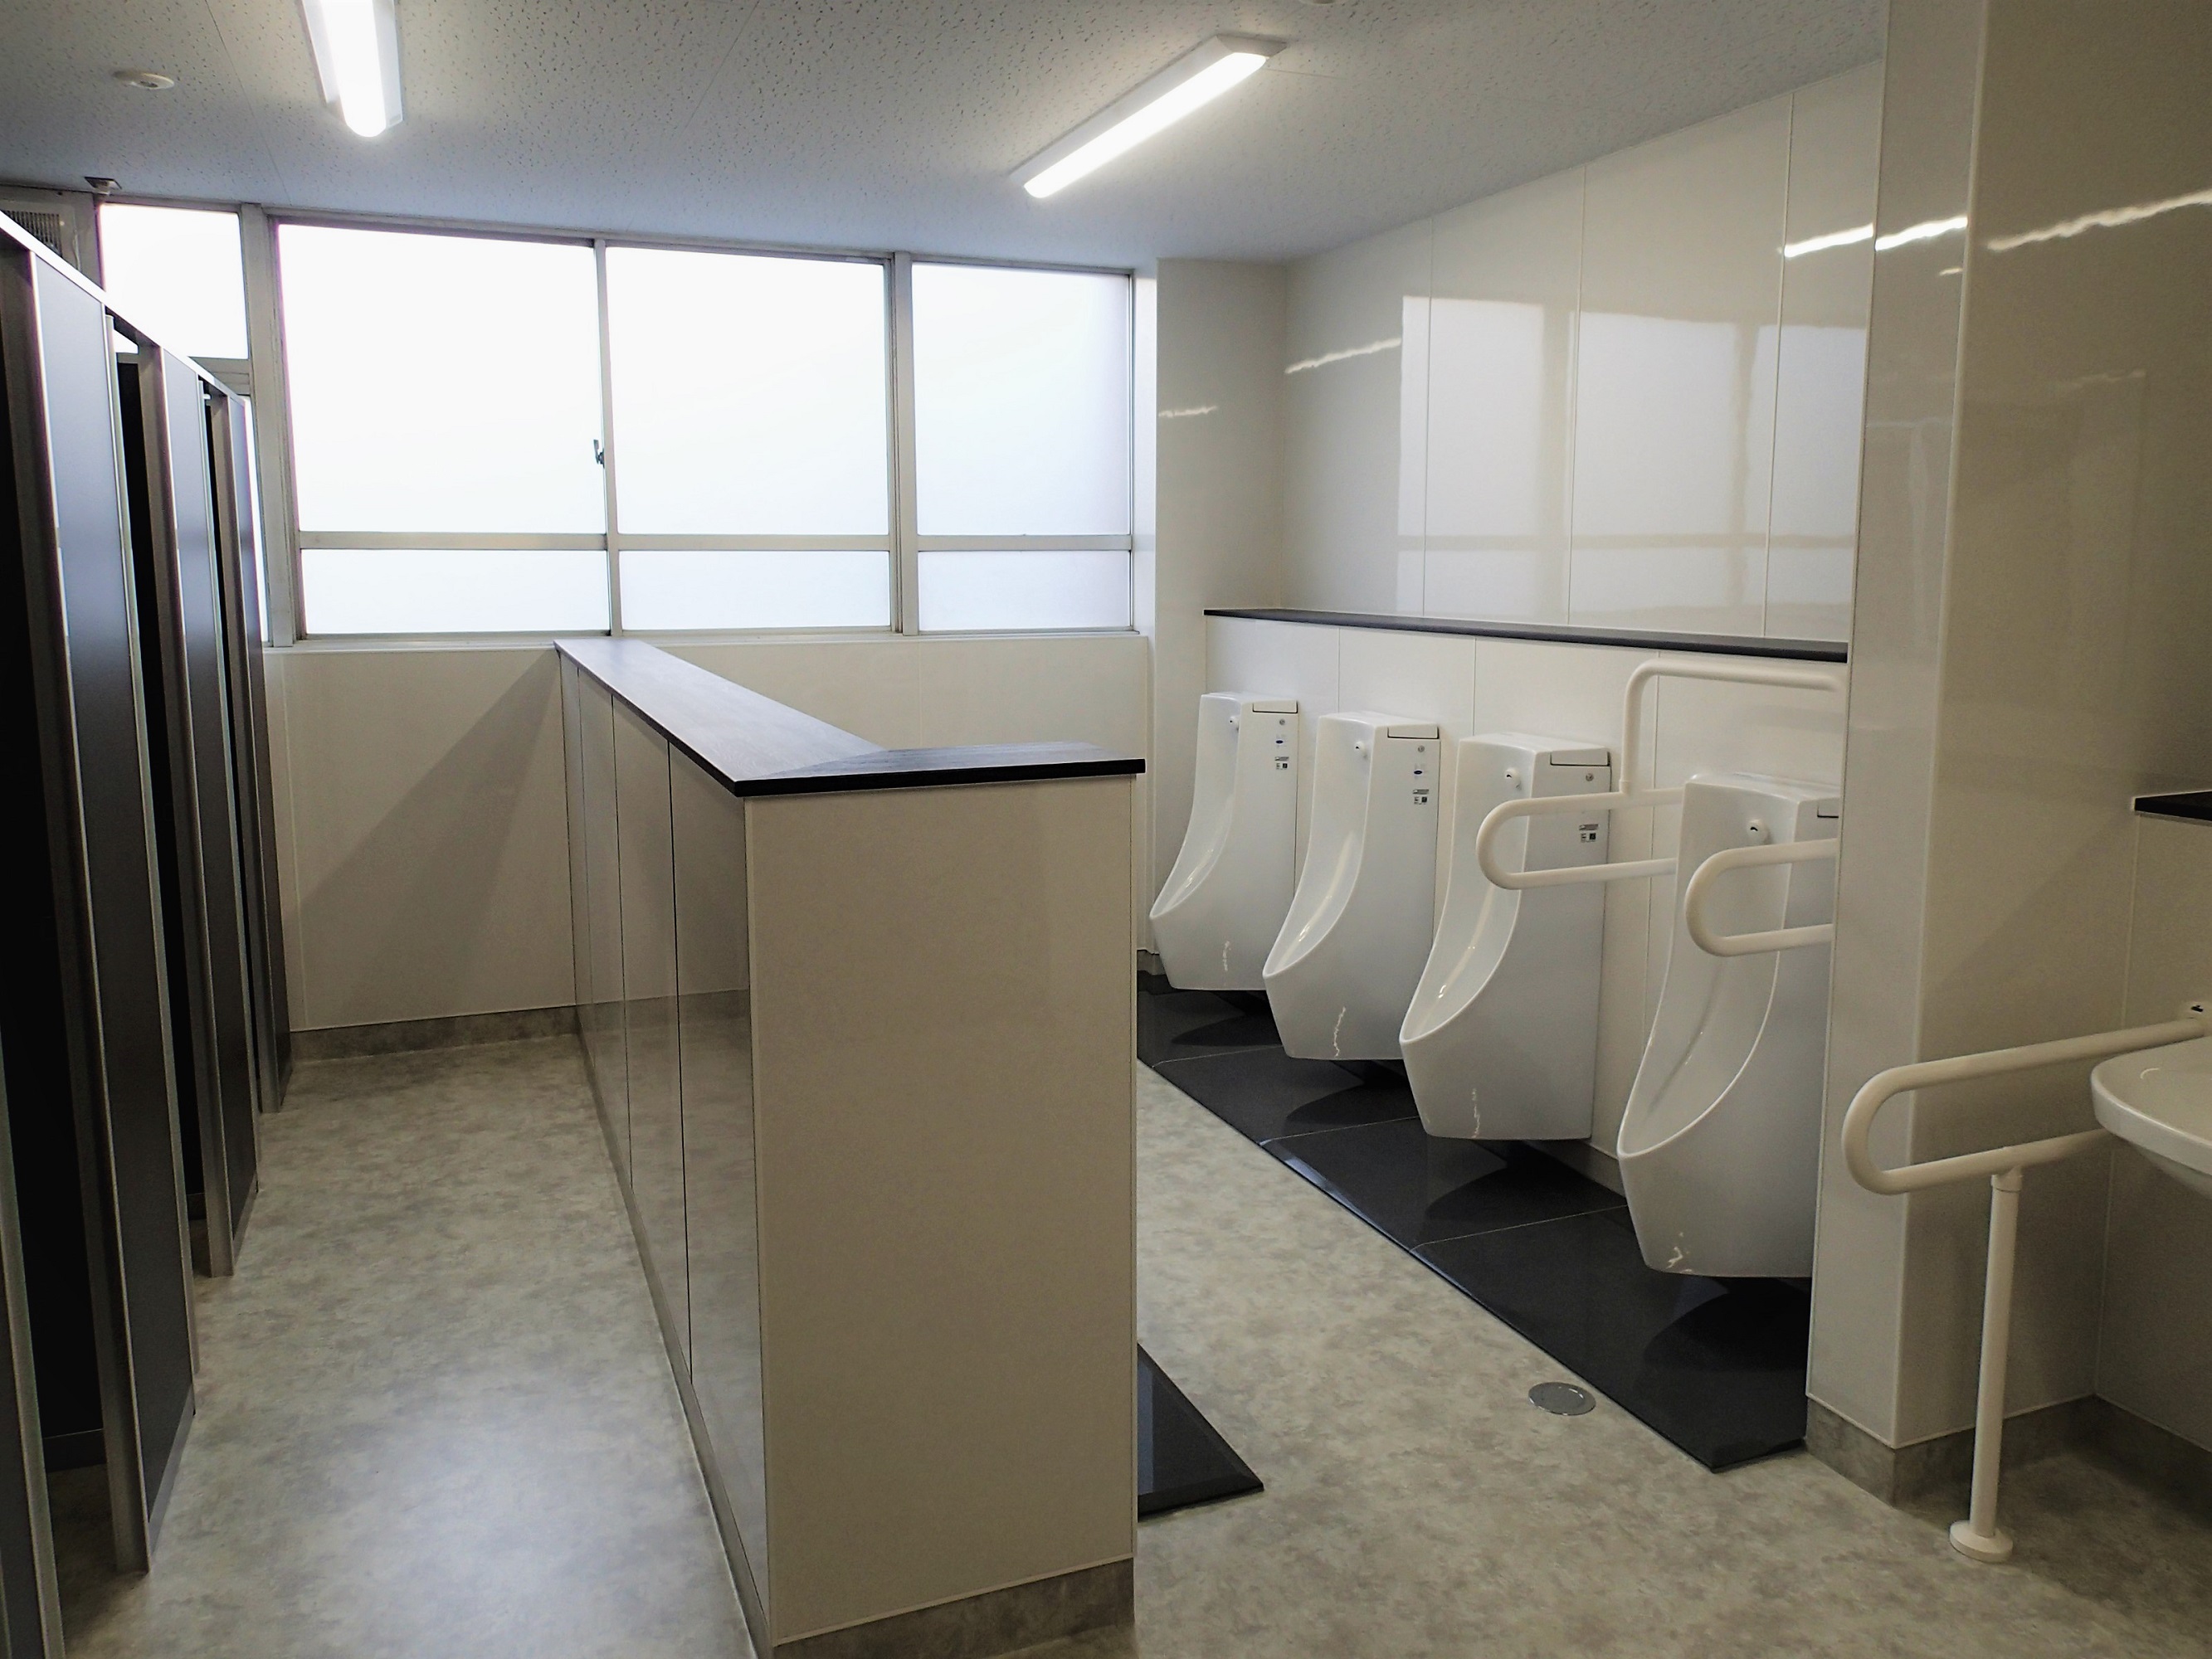 20川越高校本館快適HS施設整備東側トイレ改修工事のアイキャッチ画像